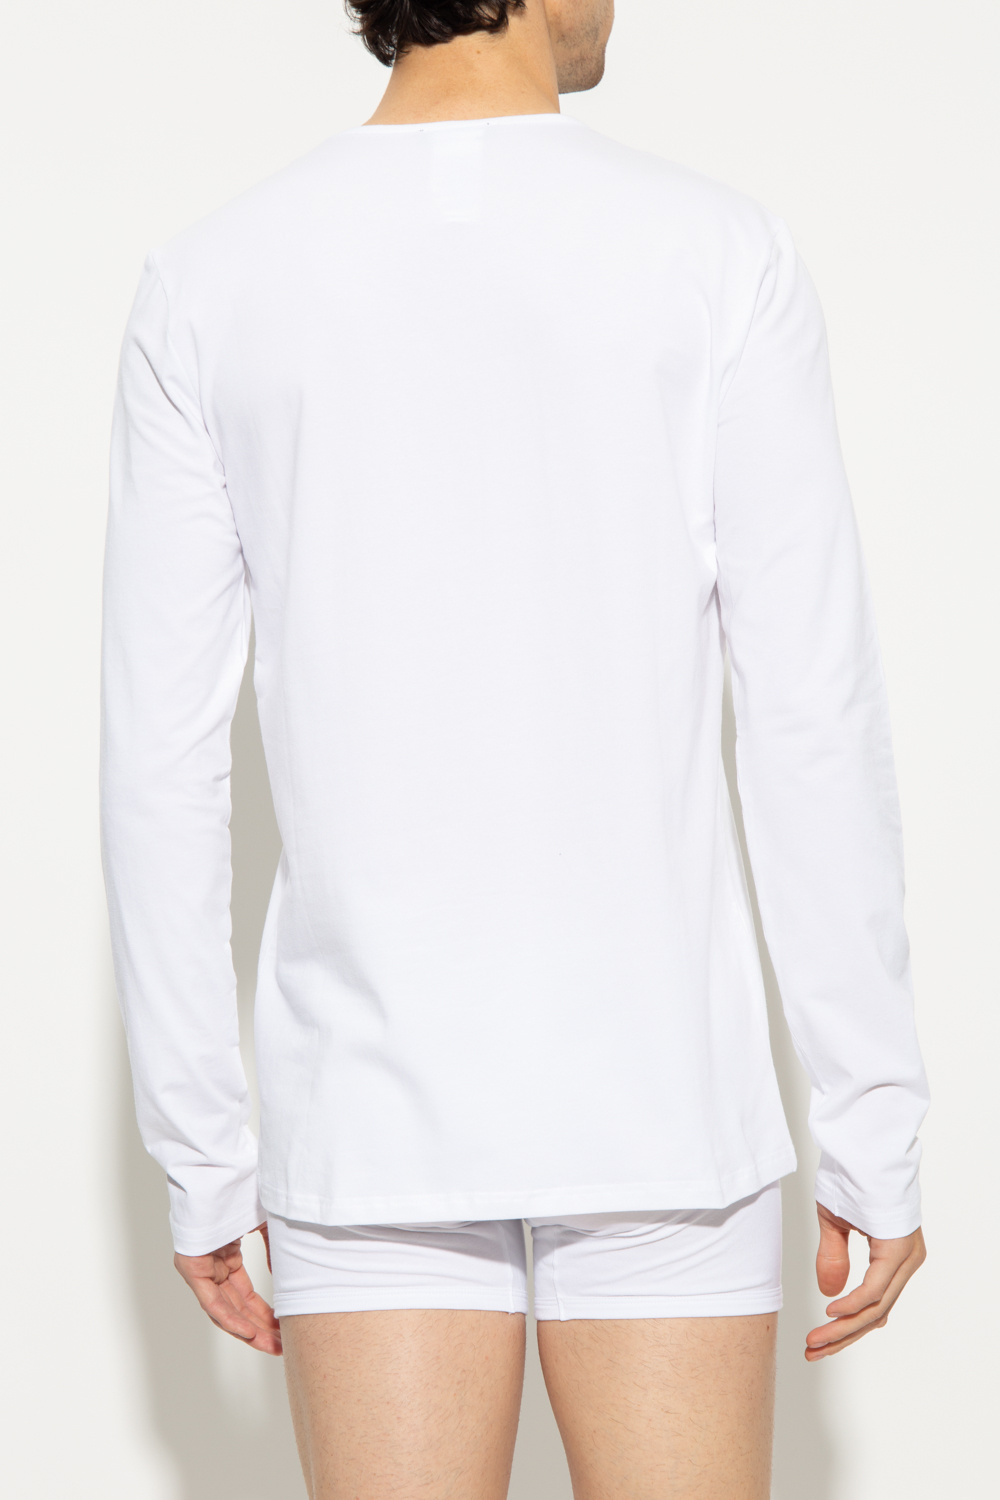 Versace White Plus New Year 2022 T-shirt